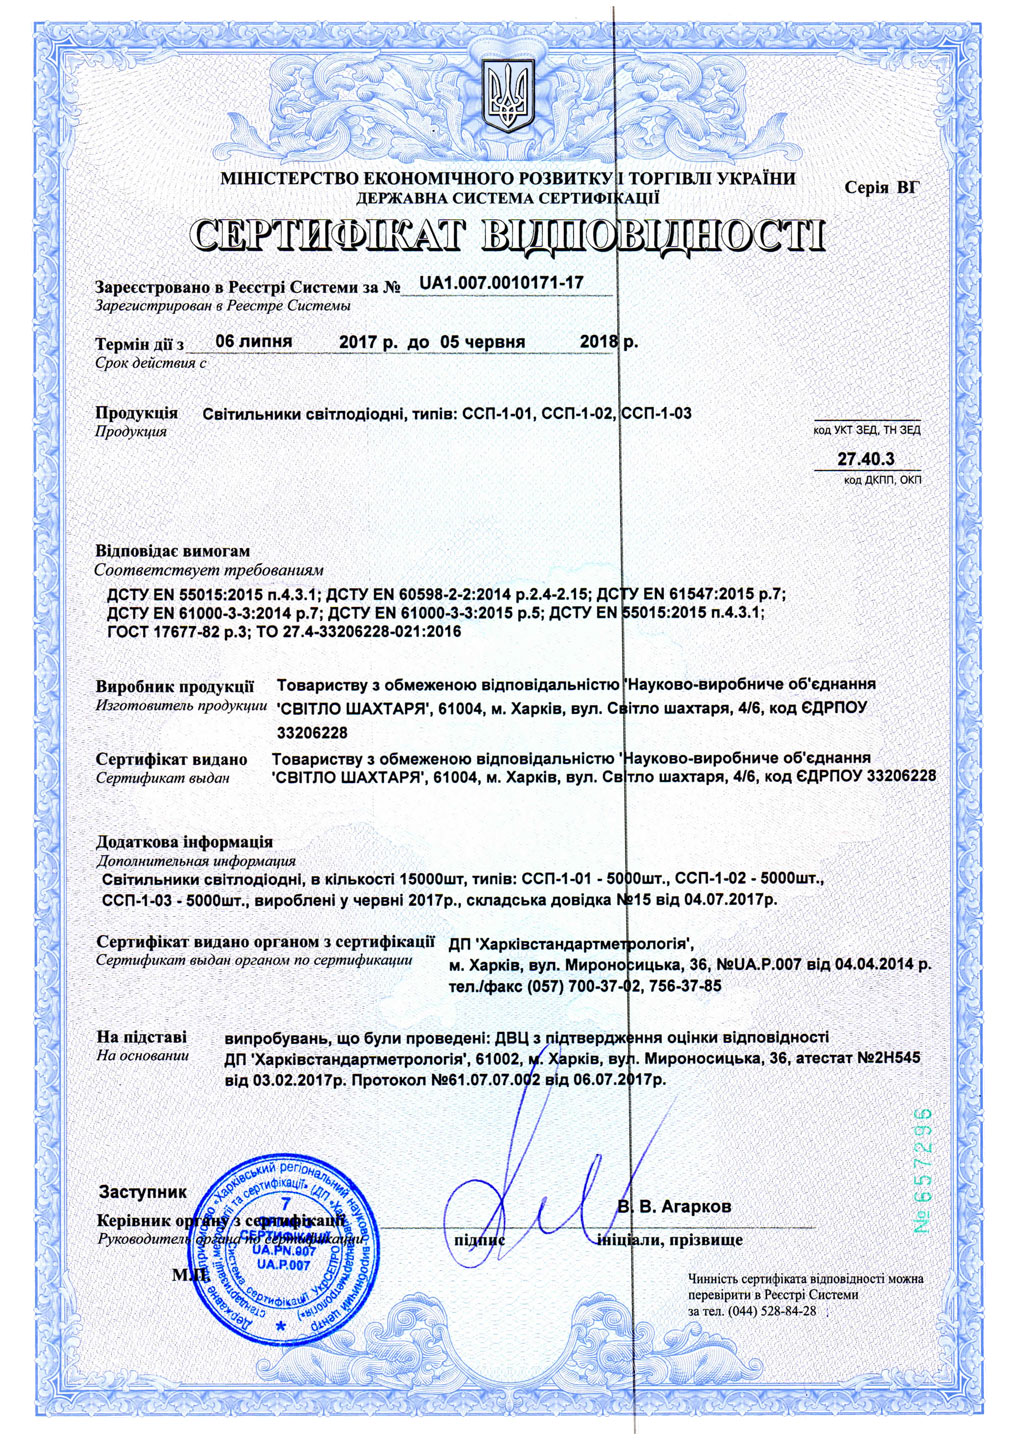 Сертифiкат вiдповiдностi ССП-1-01, ССП-1-02, ССП-1-03